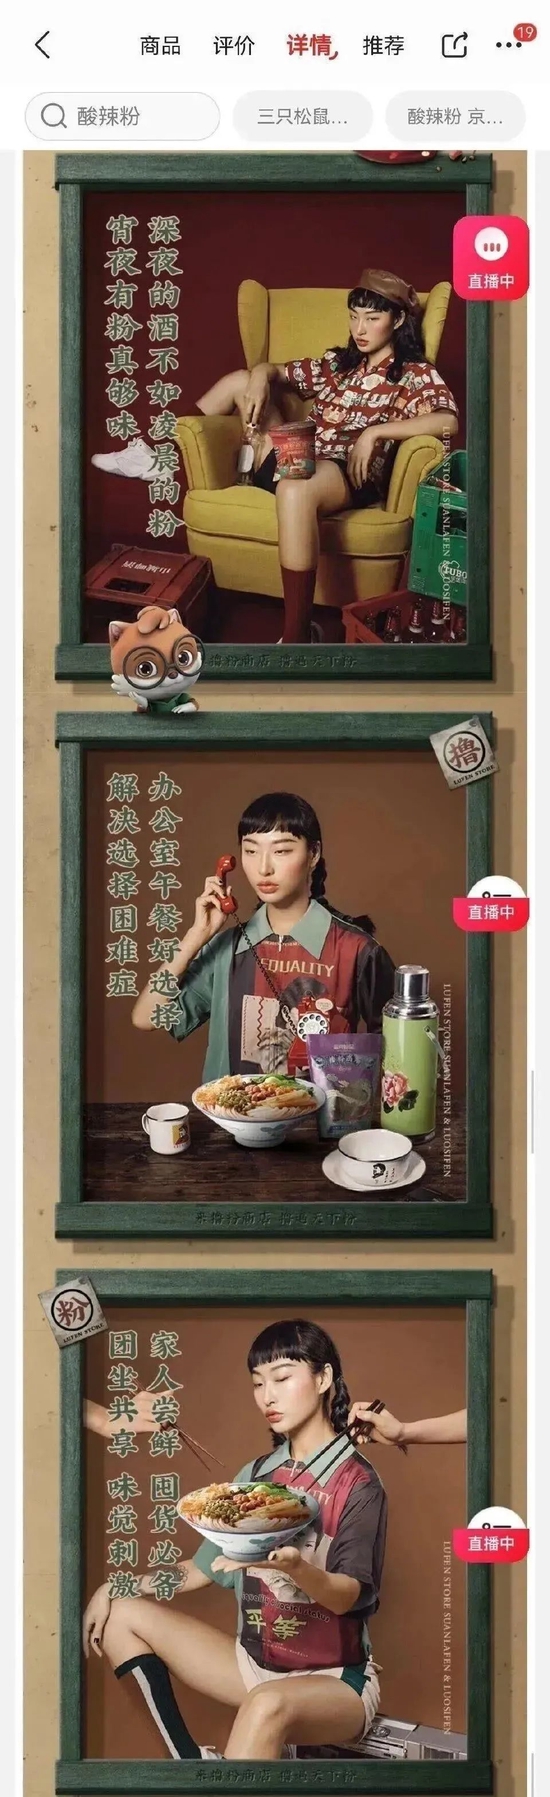 视点·观察|上海消保委回应三只松鼠模特妆容问题：应契合消费者审美